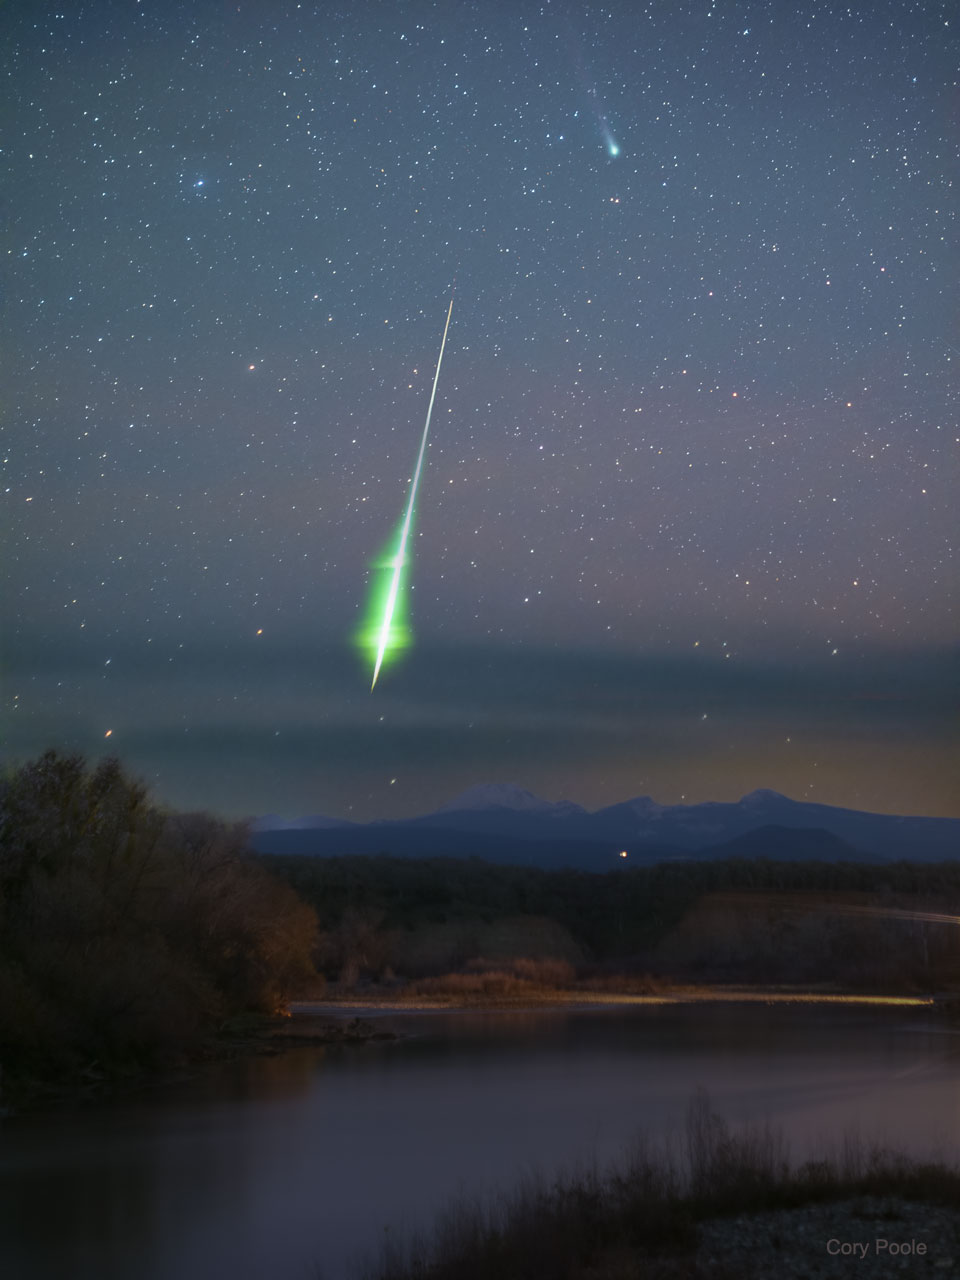 特色图片显示了伦纳德彗星在背景中，前景中有一颗亮绿色的火球流星。这张照片是从美国加利福尼亚州北部拍摄的。有关更多详细信息，请参阅说明。